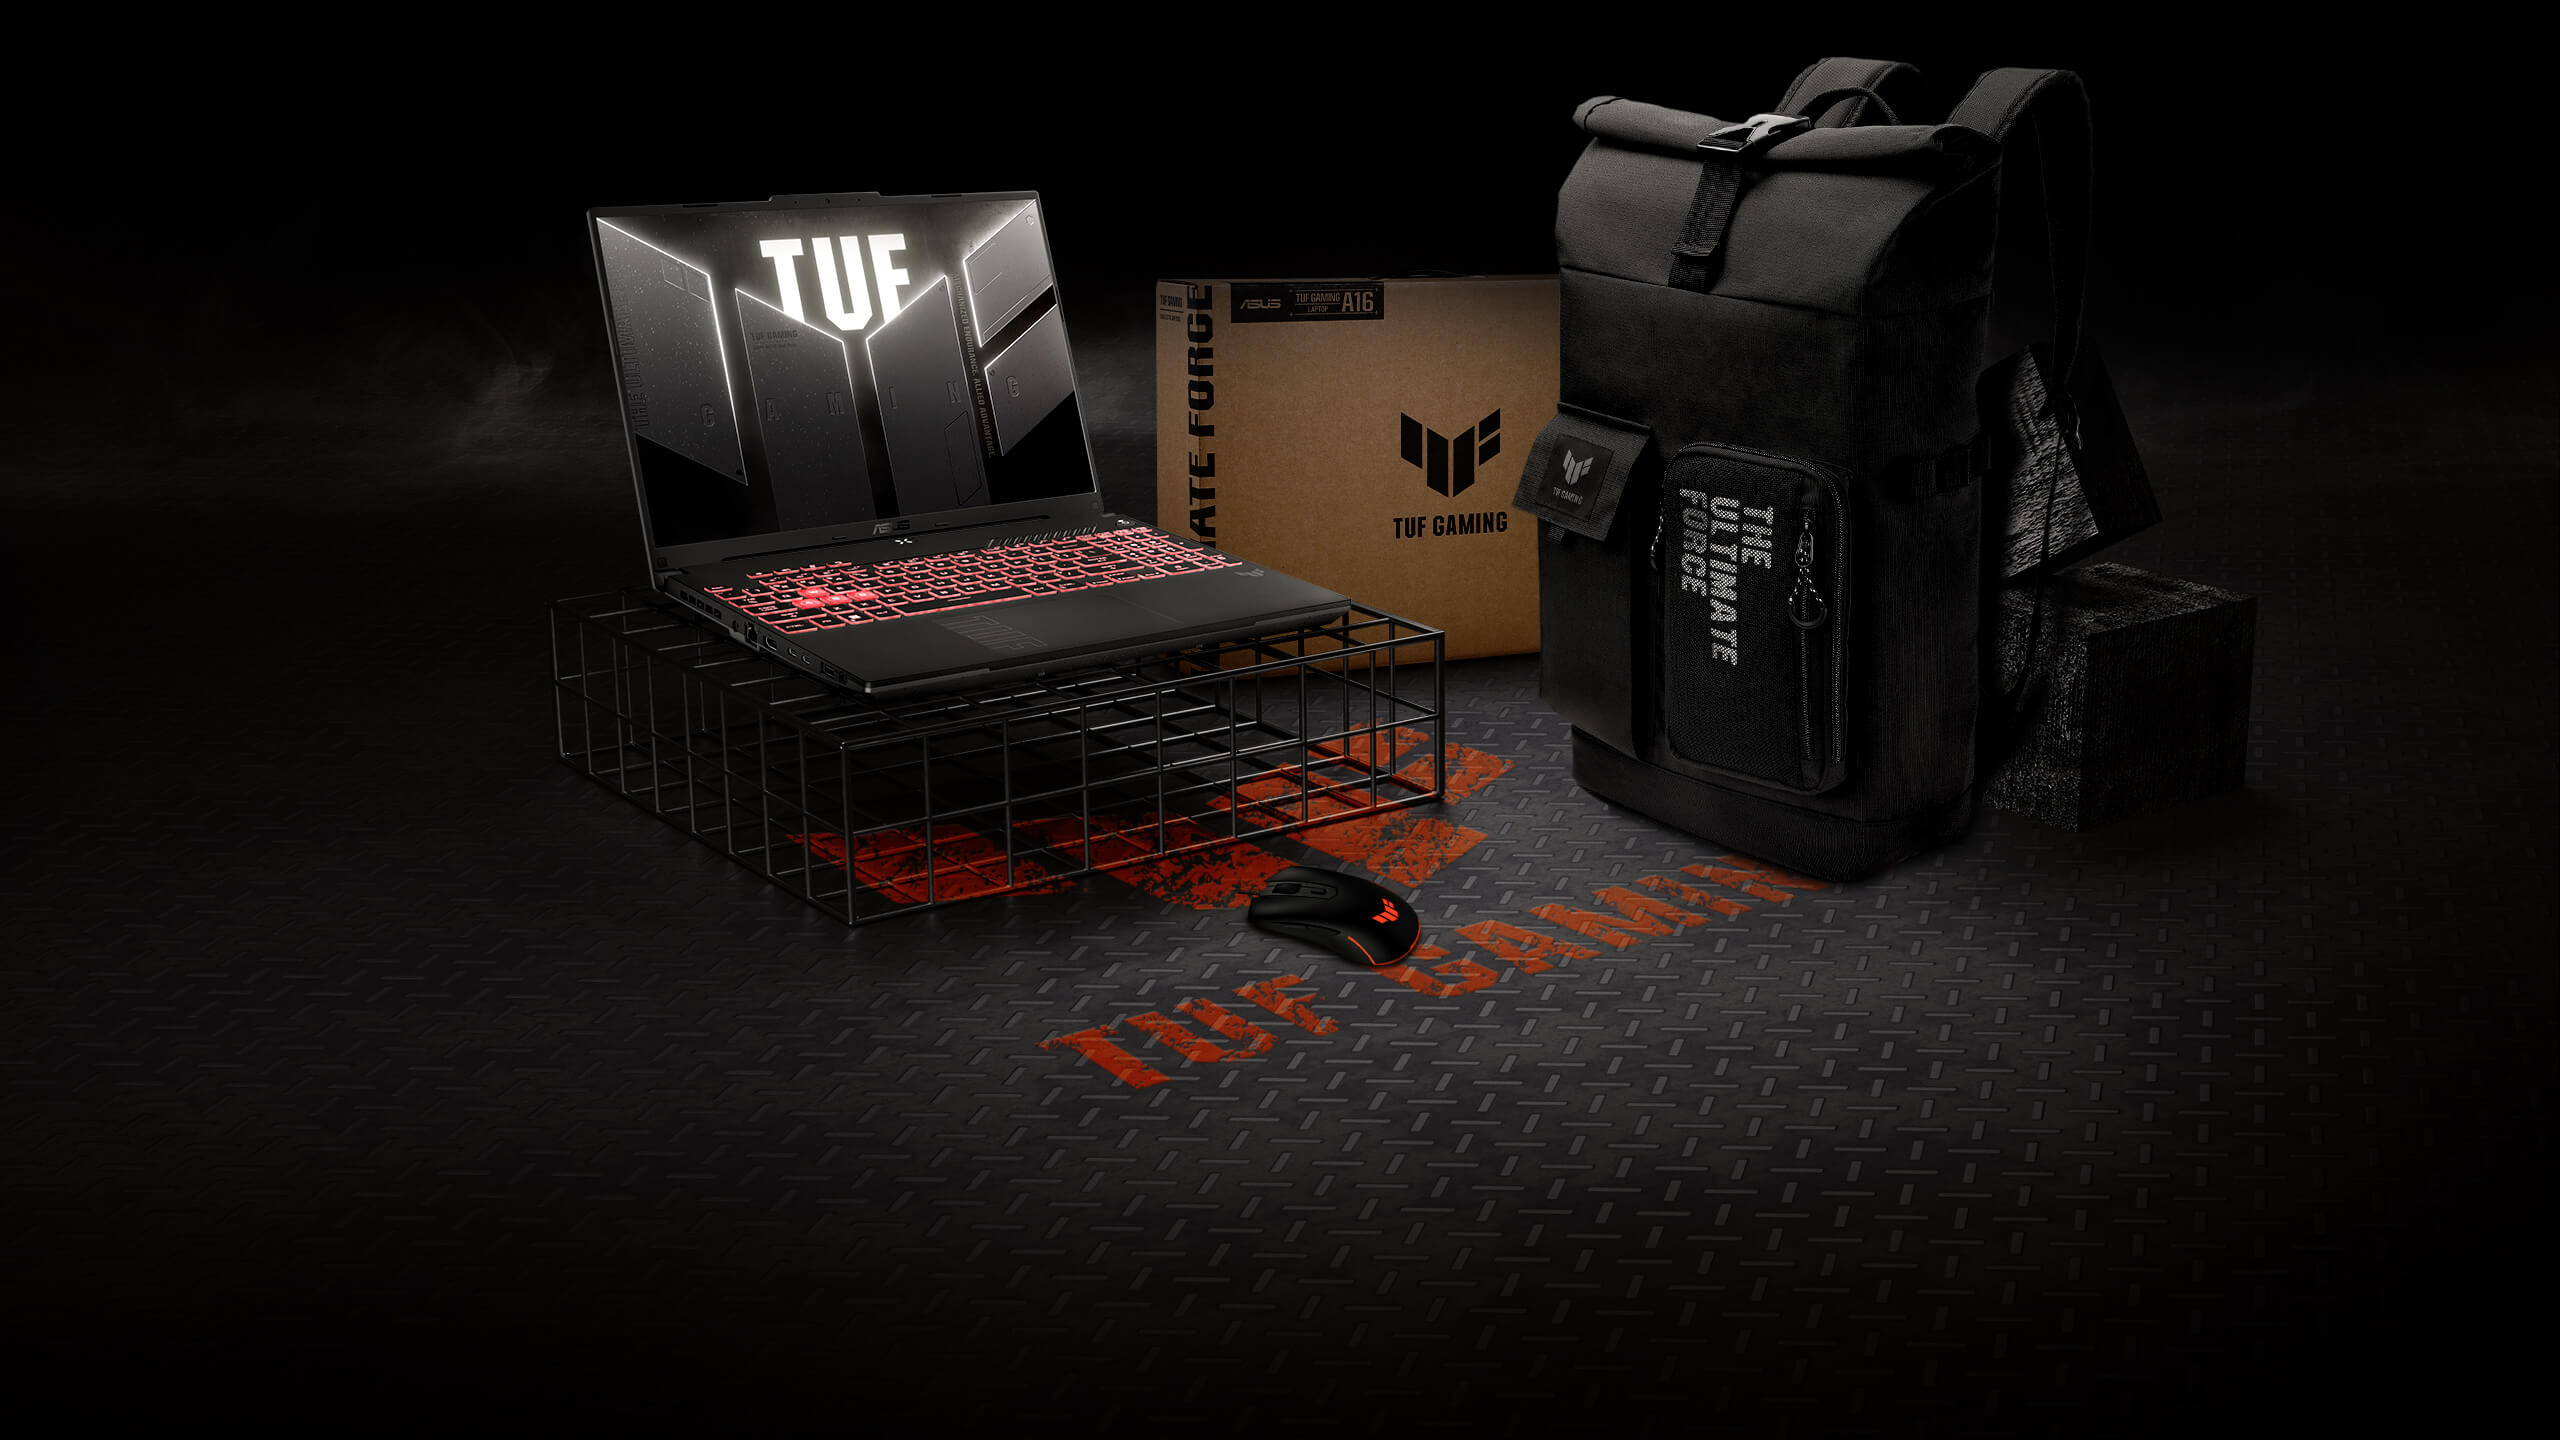 Ноутбук TUF Gaming A16 стоит на проволочной подставке. Рядом с ним находятся мышь и рюкзак серии TUF Gaming.